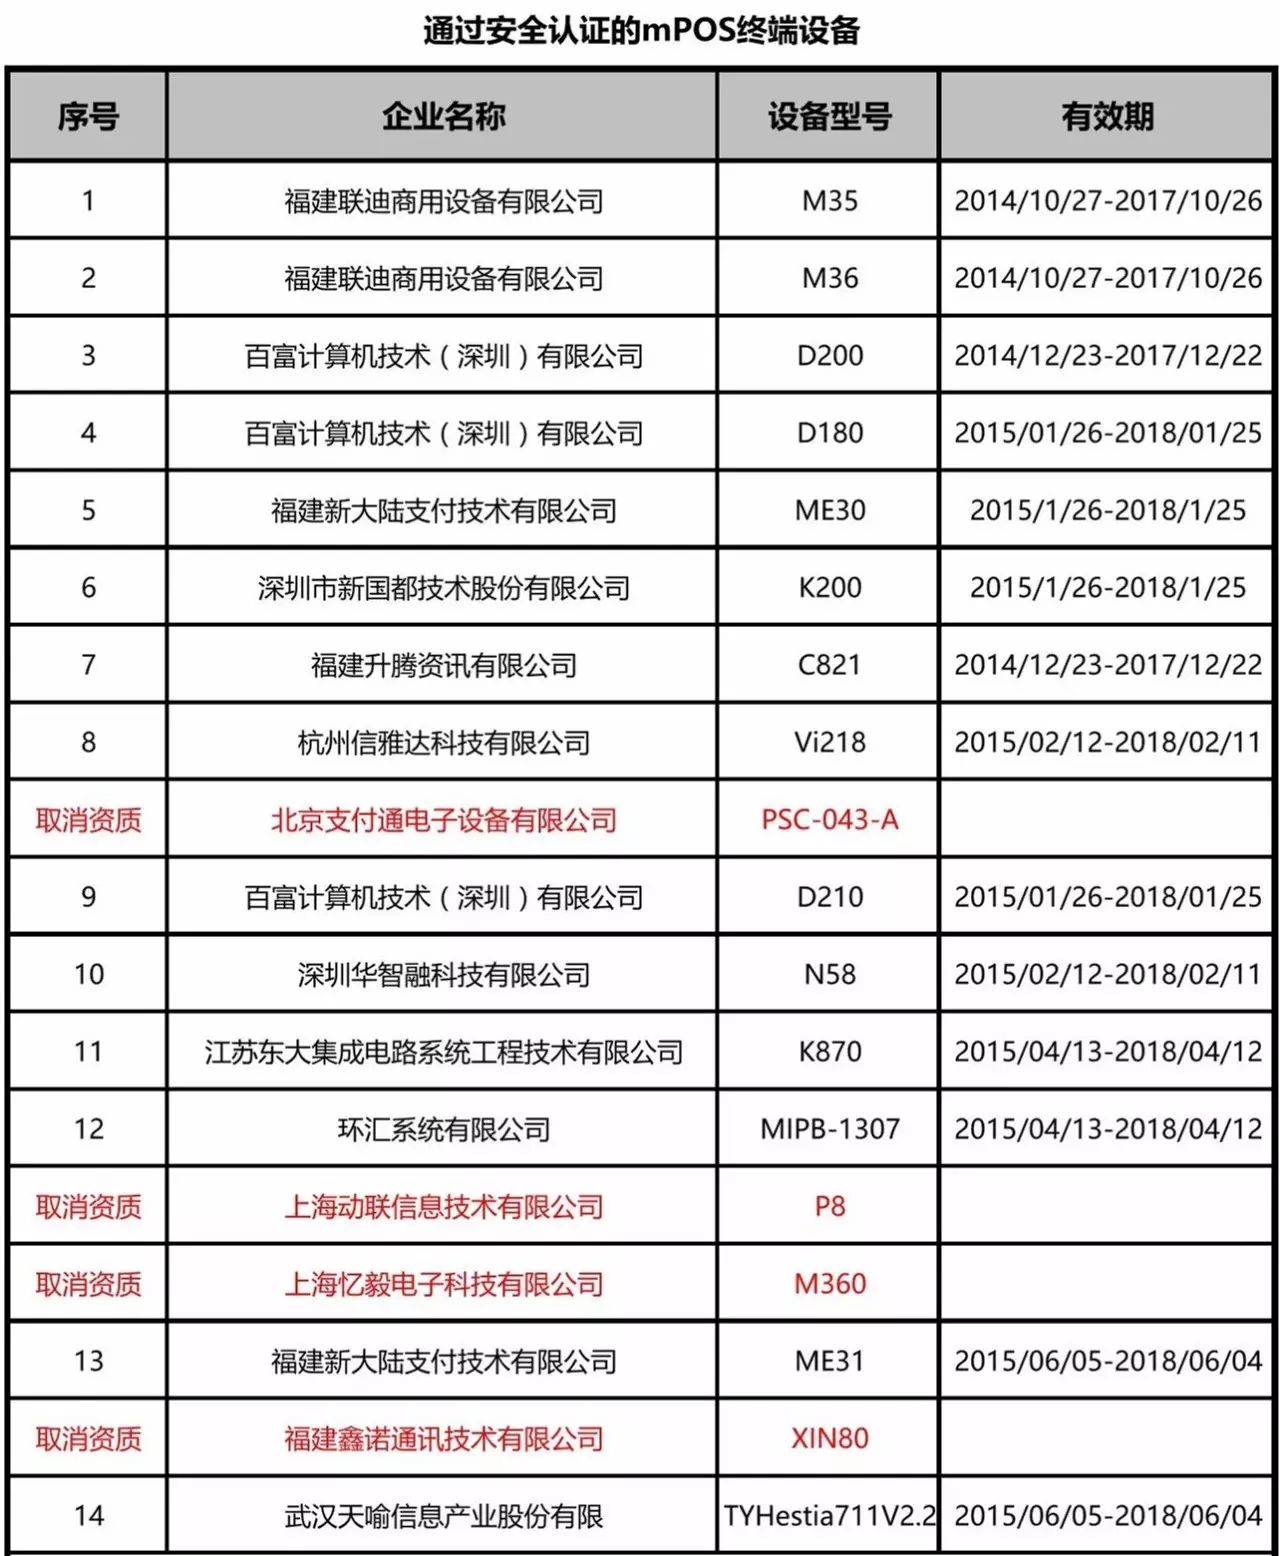 中国银联官网公布【通过安全认证的银联卡受理终端投备列表】(图1)